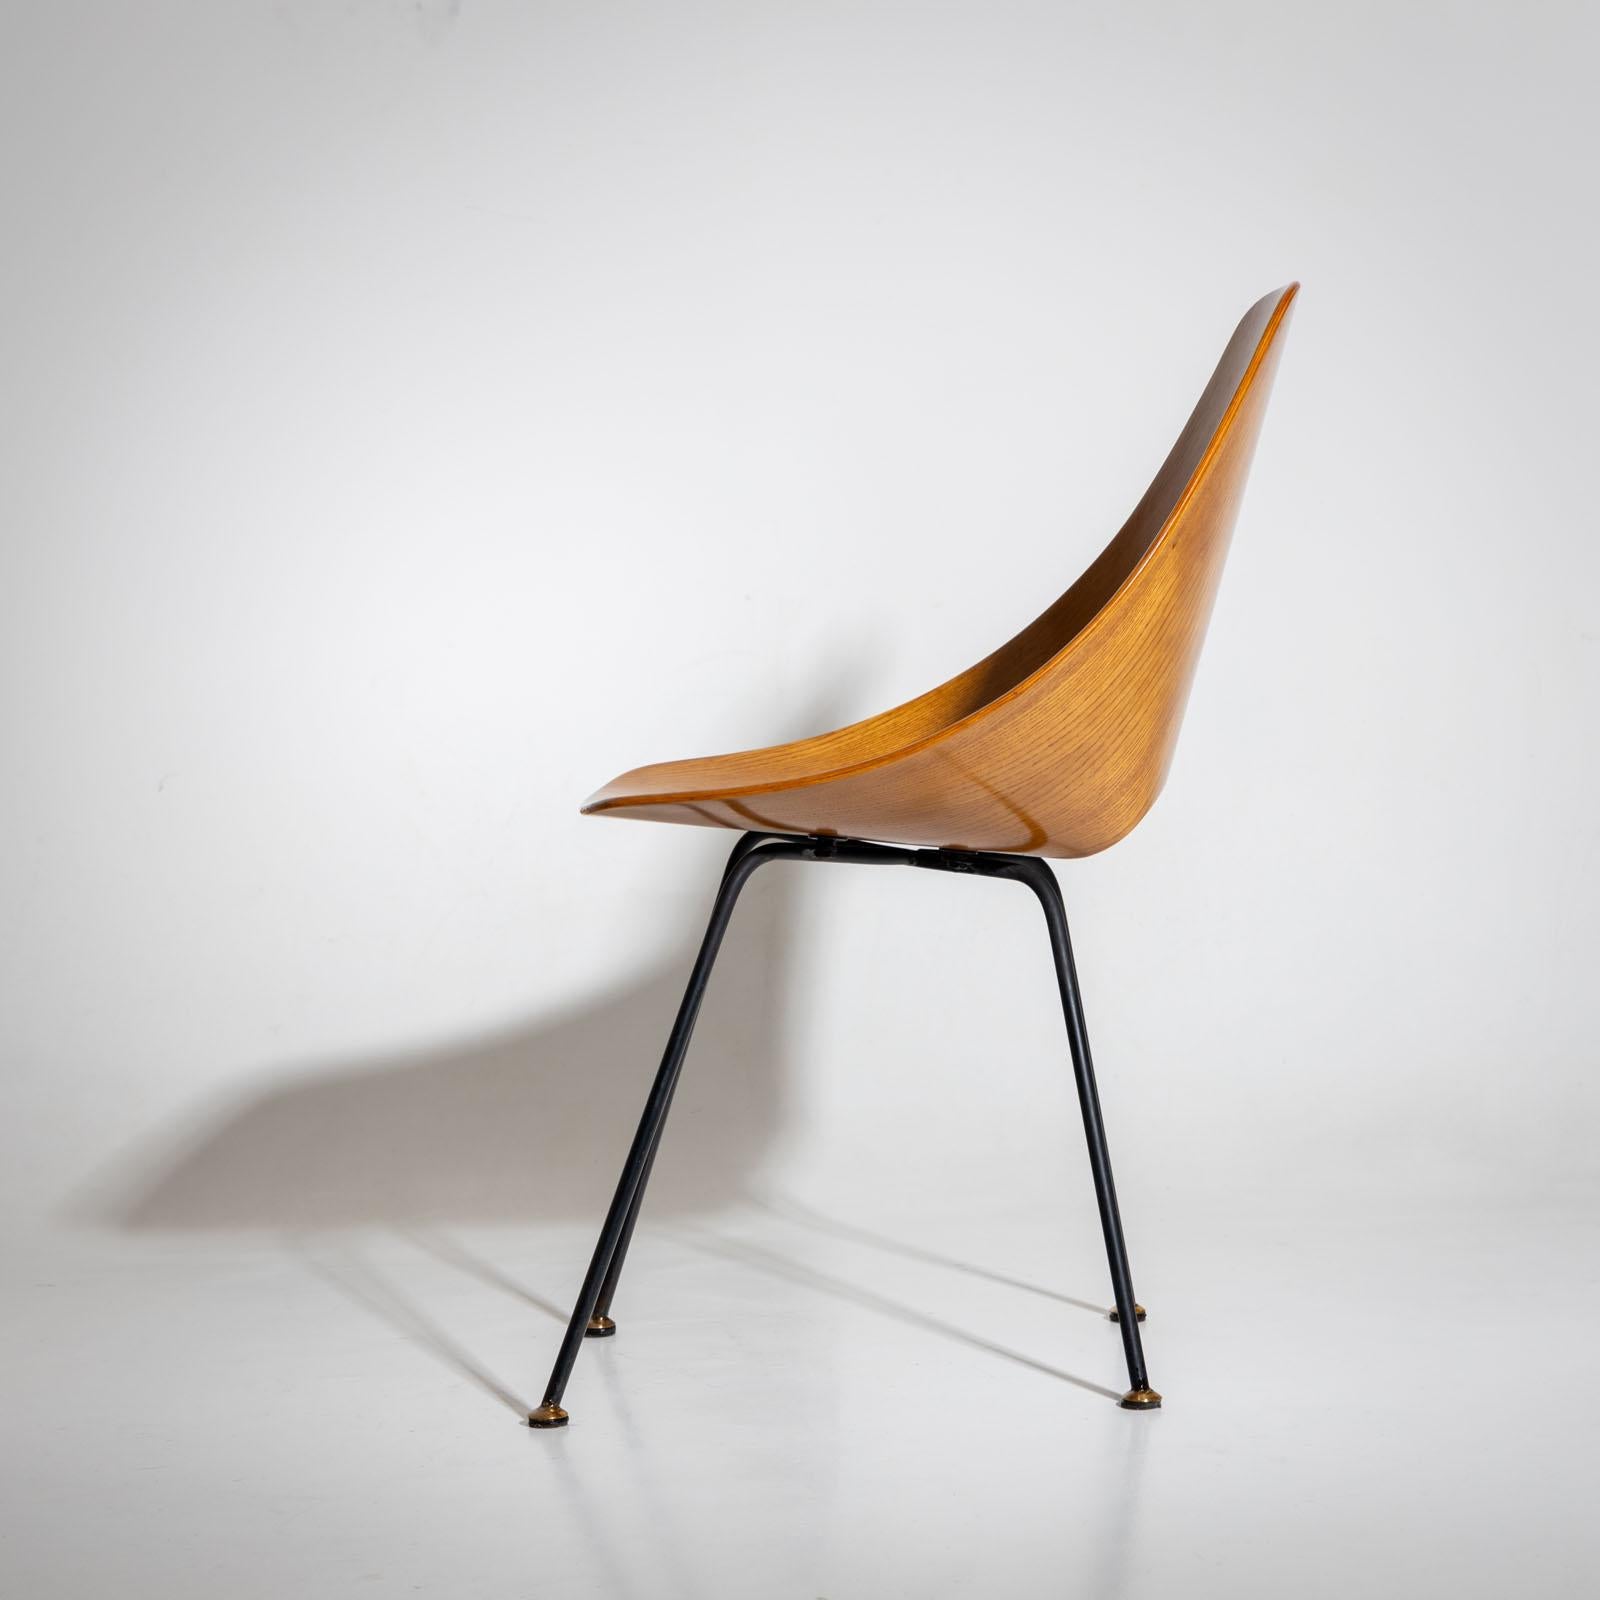 Der Medea Stuhl von Vittorio Nobili zeichnet sich durch seine schlanken Metallbeine und die charakteristische Sitzschale mit einer ovalen Aussparung in der Mitte aus. In einem sehr guten Zustand und fachmännisch restauriert, ist dieser Stuhl ein